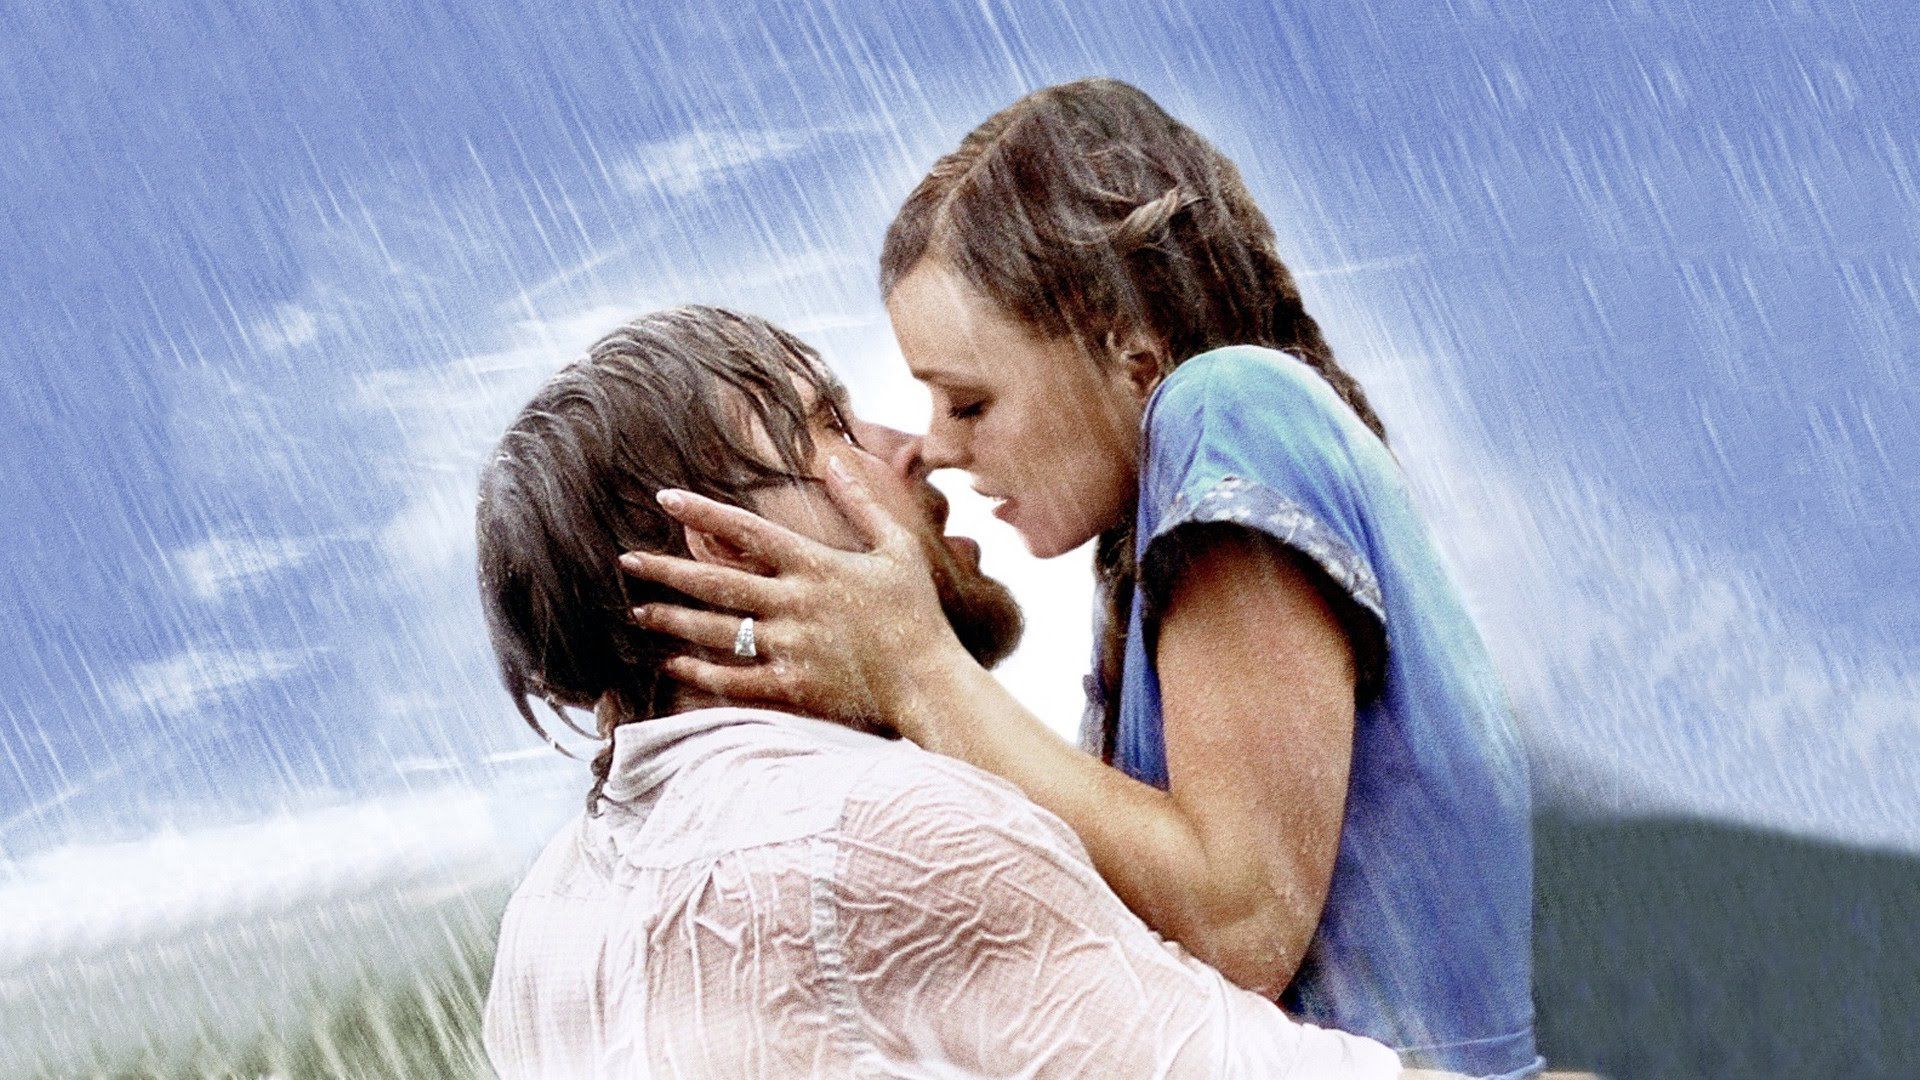 İzlemek İsteyeceğiniz 10 Romantik Film Önerileri